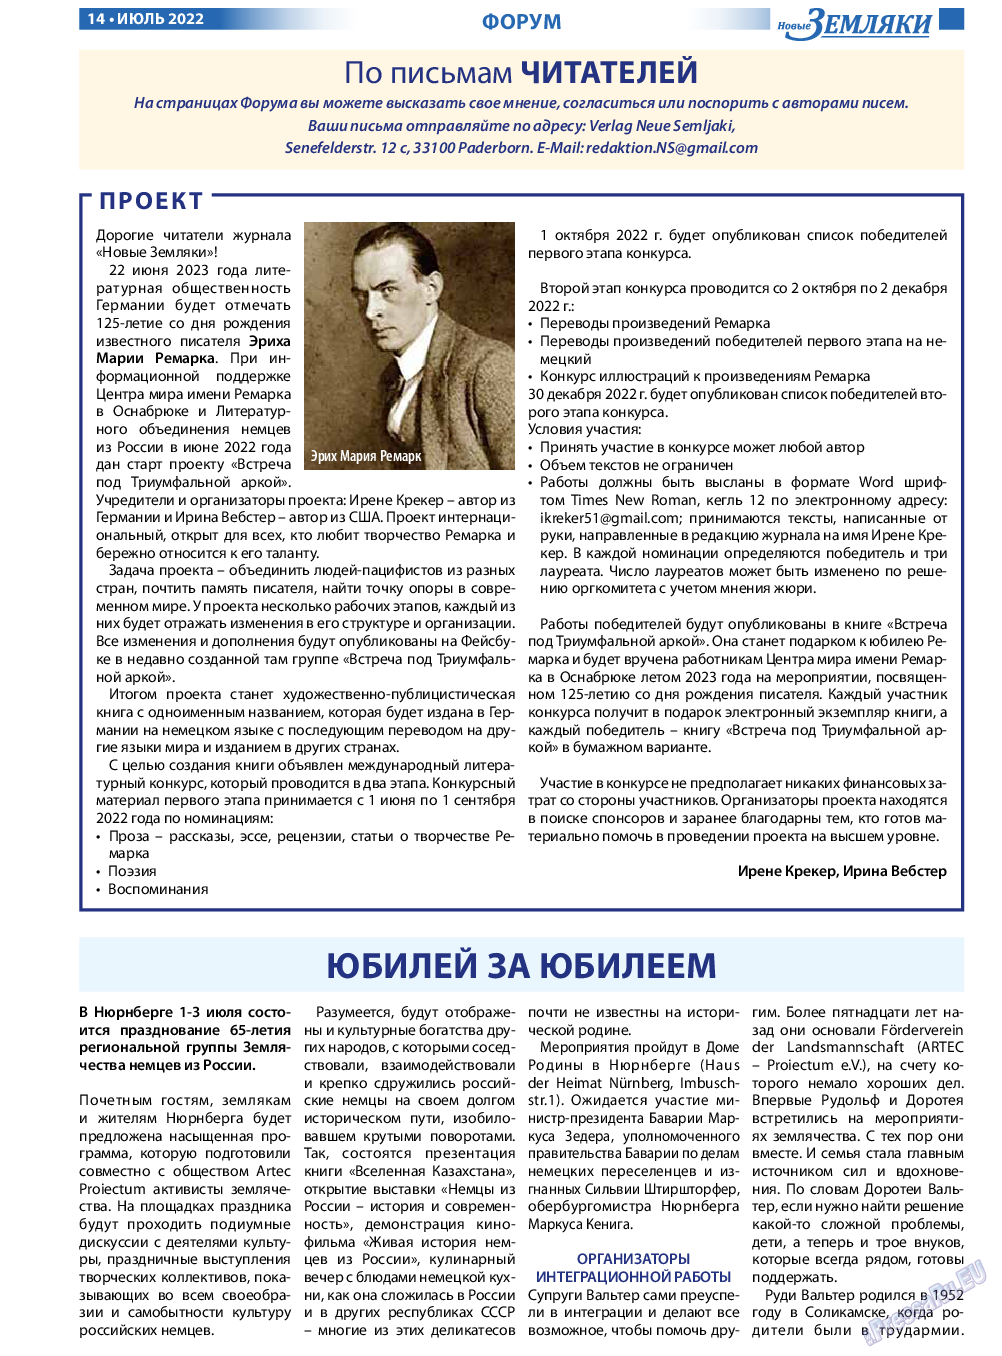 Новые Земляки, газета. 2022 №7 стр.14